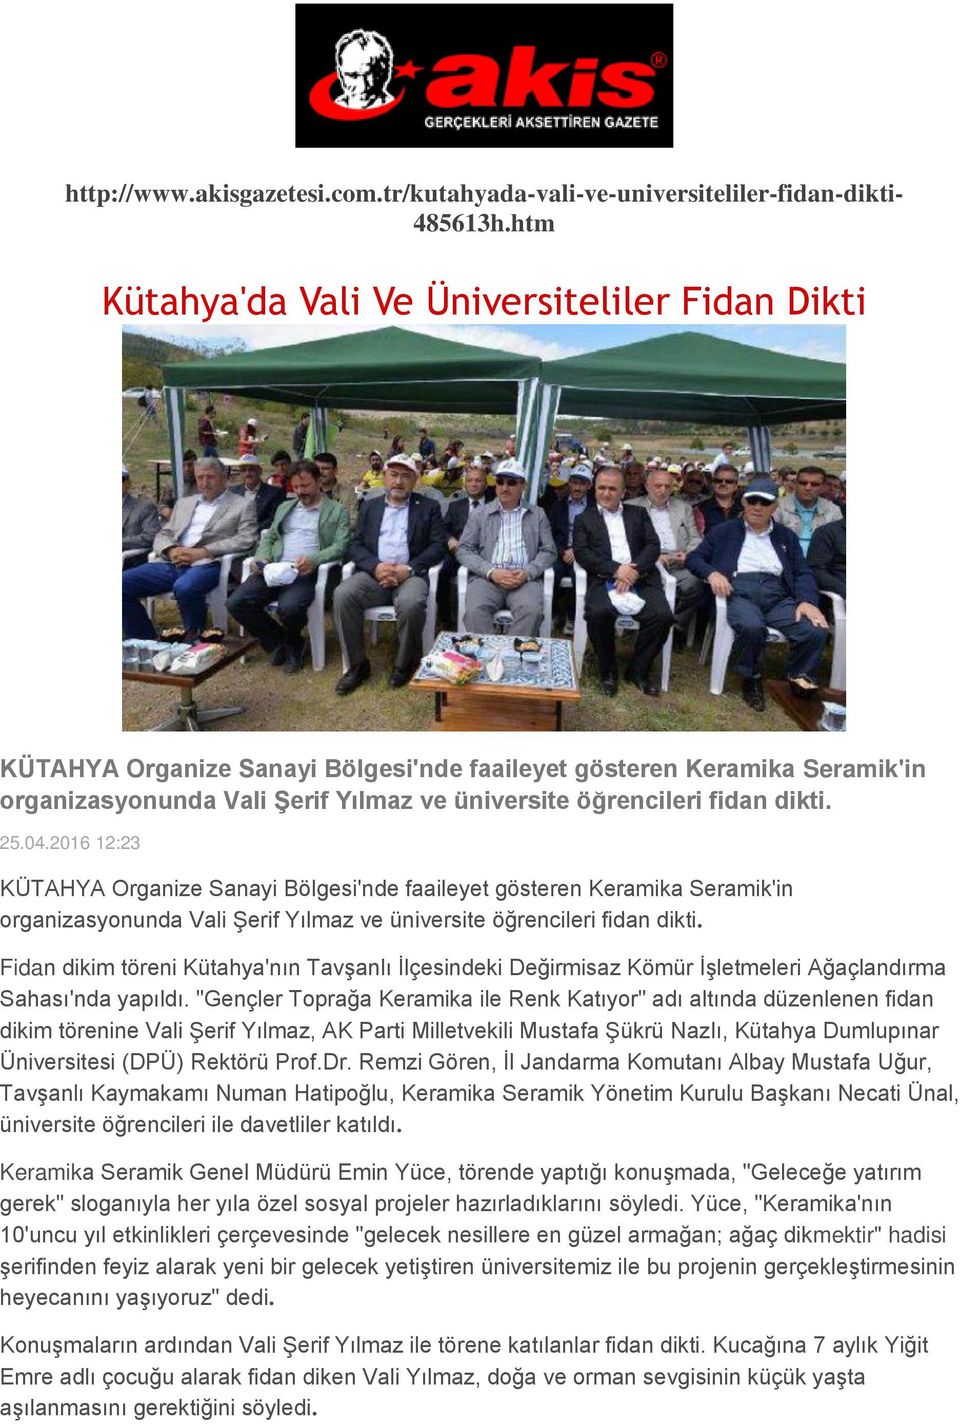 25.04.2016 12:23 KÜTAHYA Organize Sanayi Bölgesi'nde faaileyet gösteren Keramika Seramik'in organizasyonunda Vali Şerif Yılmaz ve üniversite öğrencileri fidan dikti.